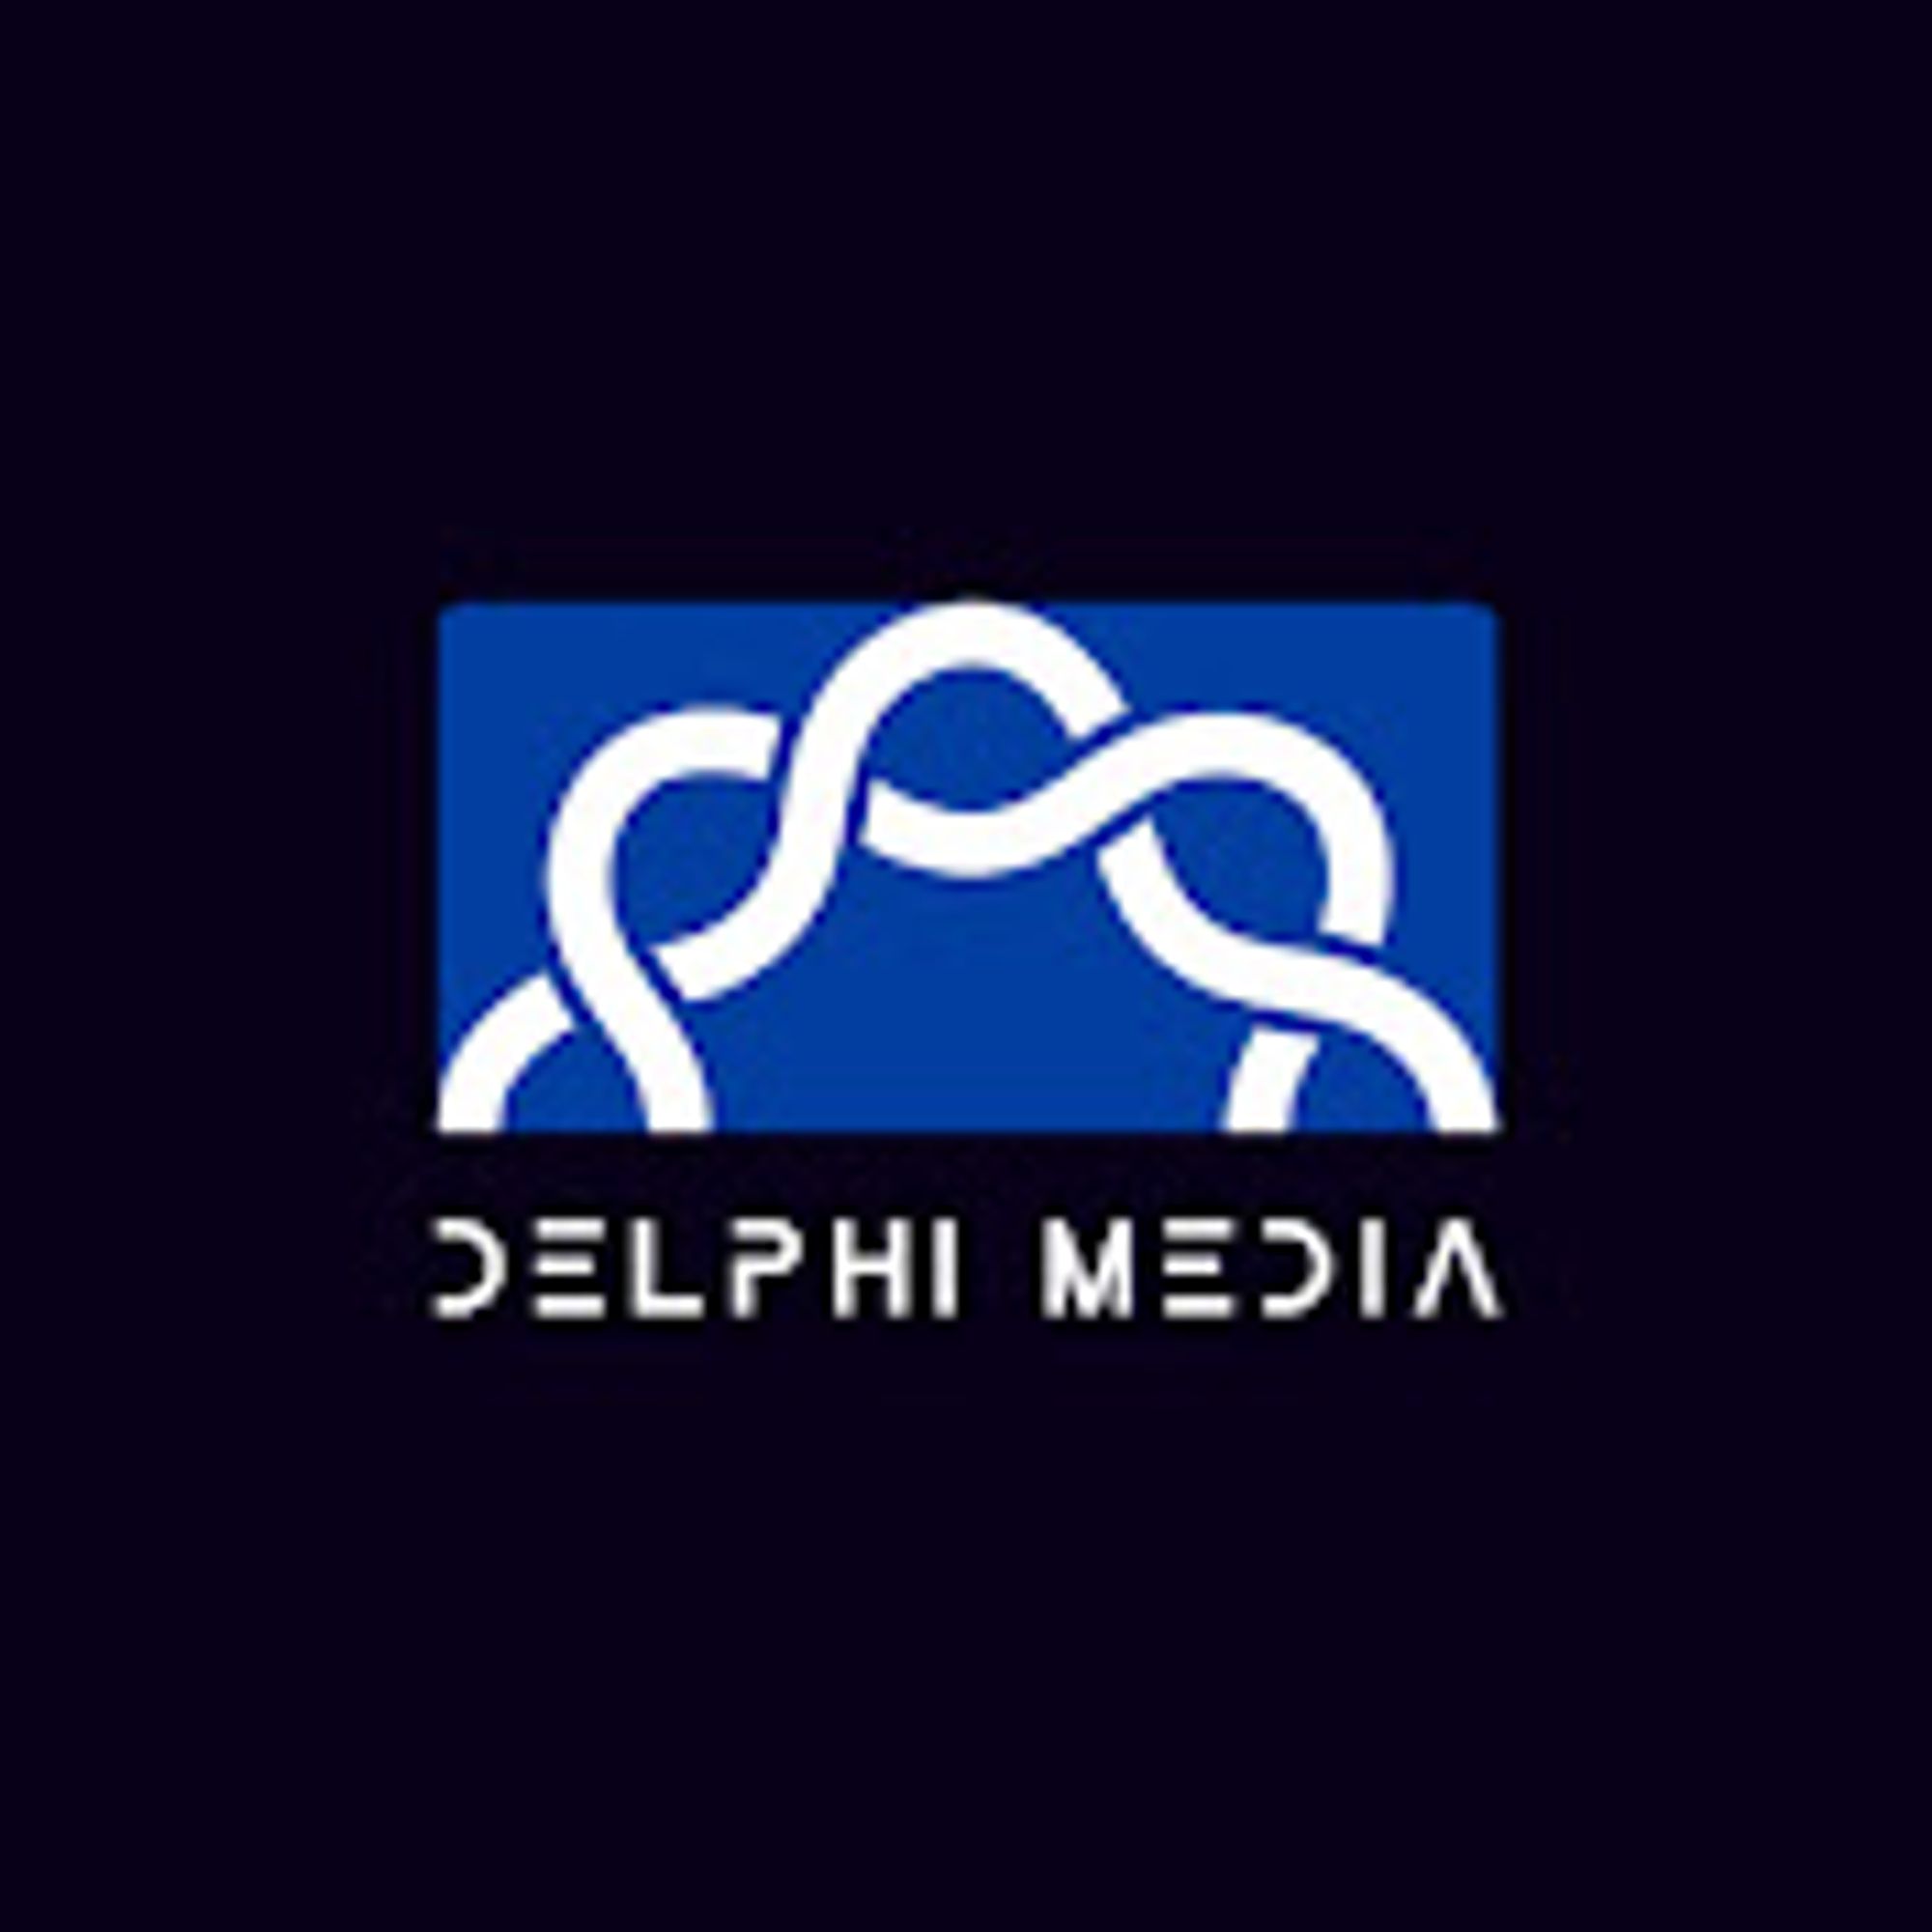 Delphi Media